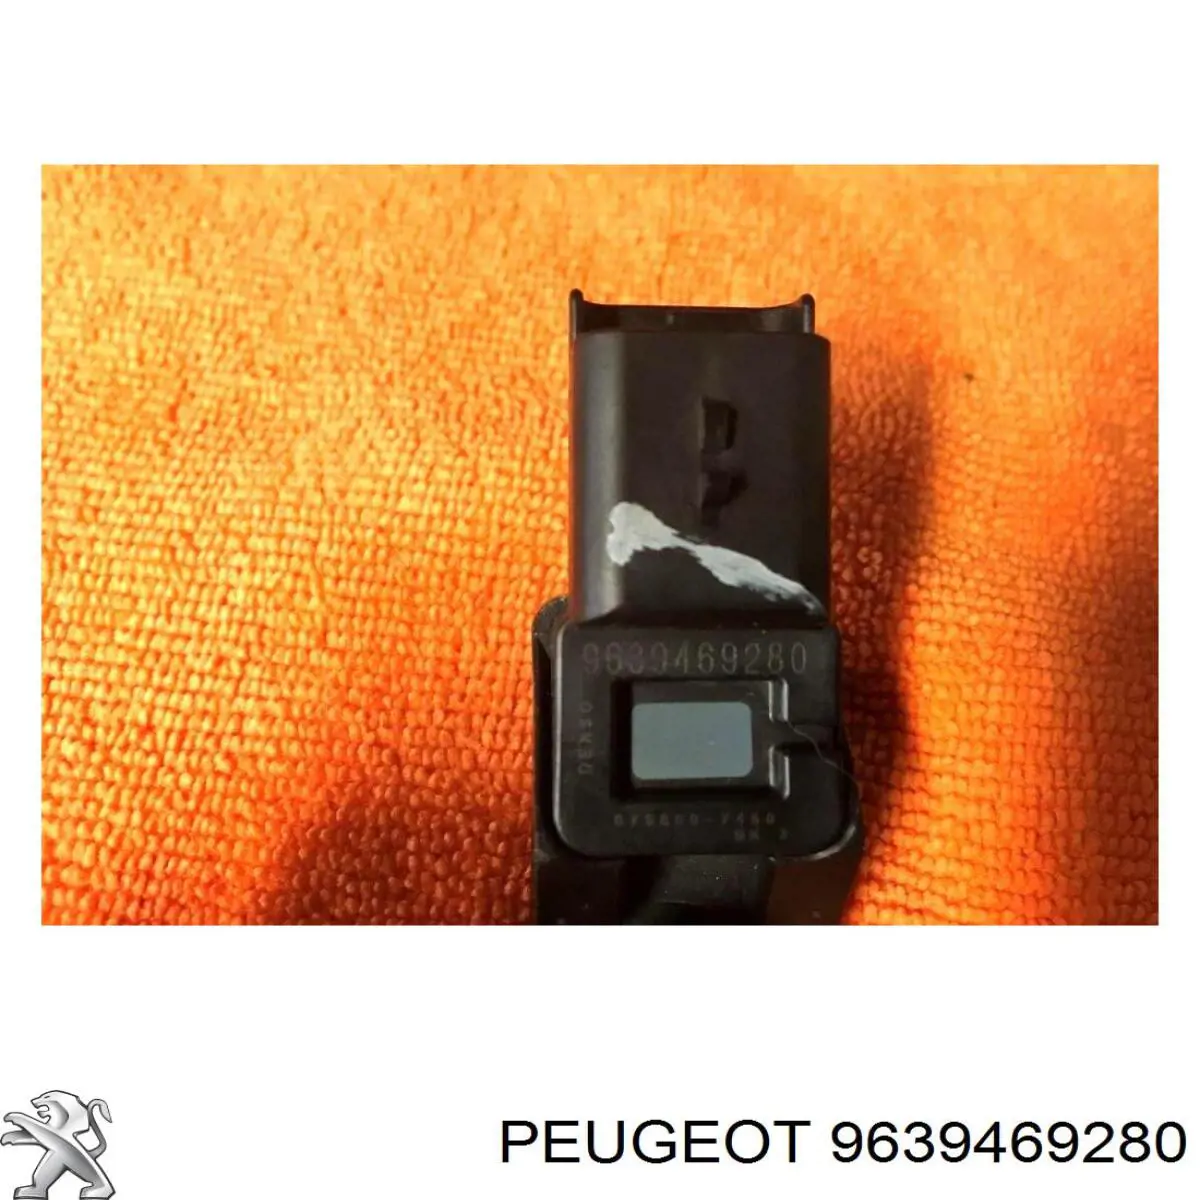 9639469280 Peugeot/Citroen sensor de pressão no coletor de admissão, map